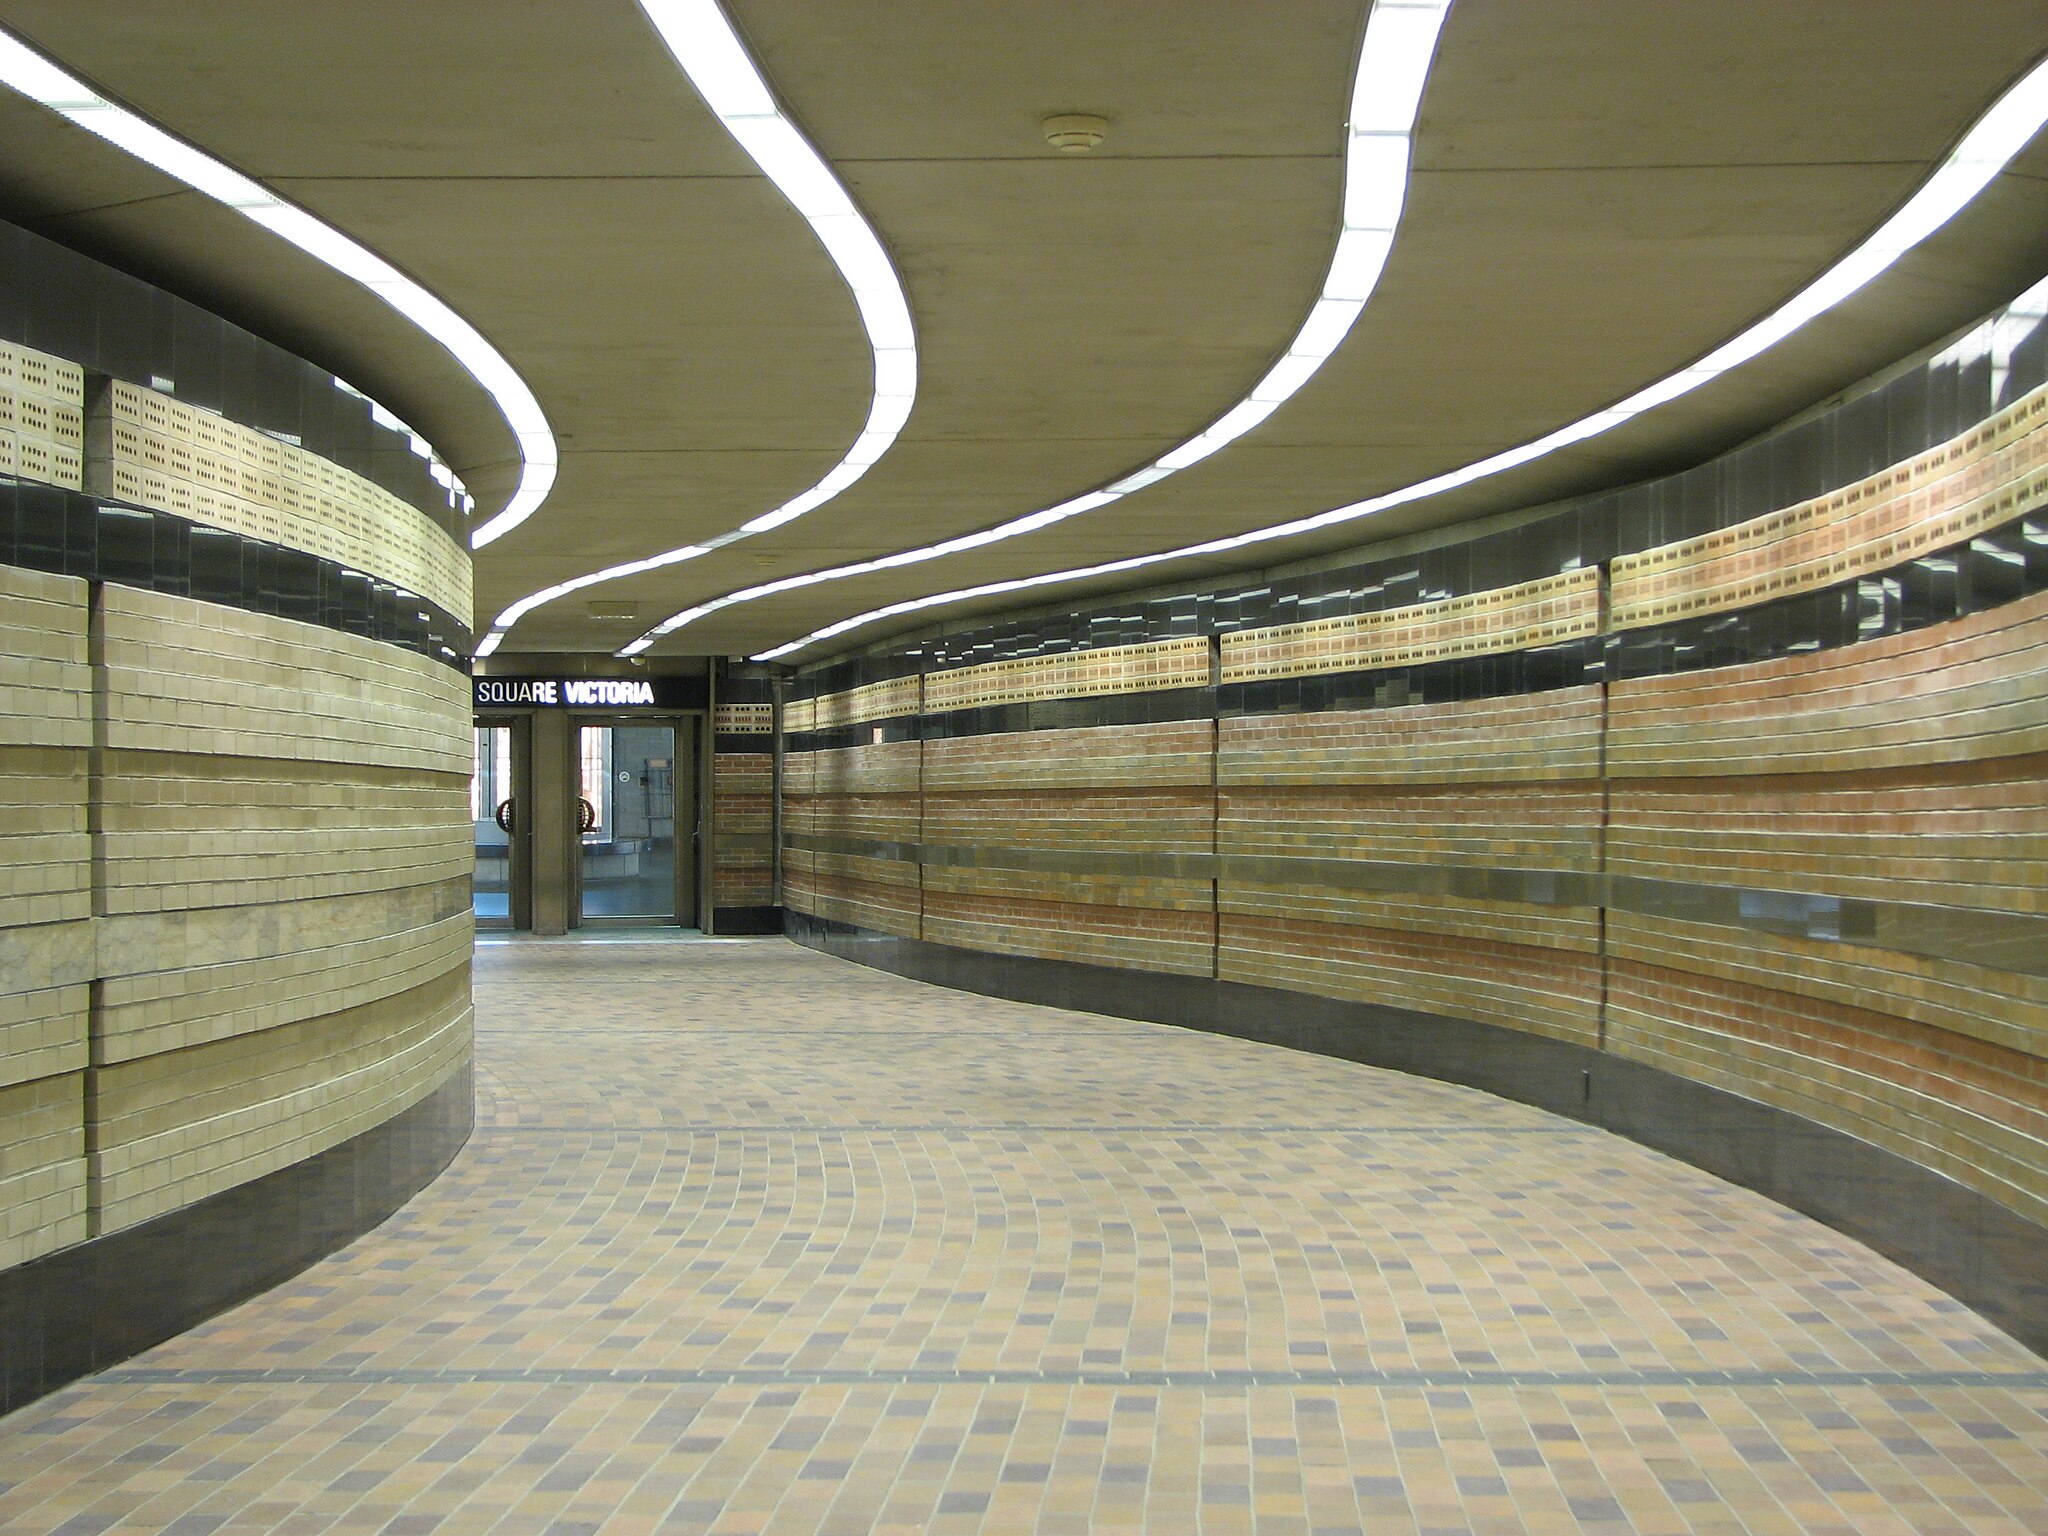 Passage entre le Centre de commerce mondial et la station de métro Square Victoria. Par Stéphane Batigne, CC BY 3.0